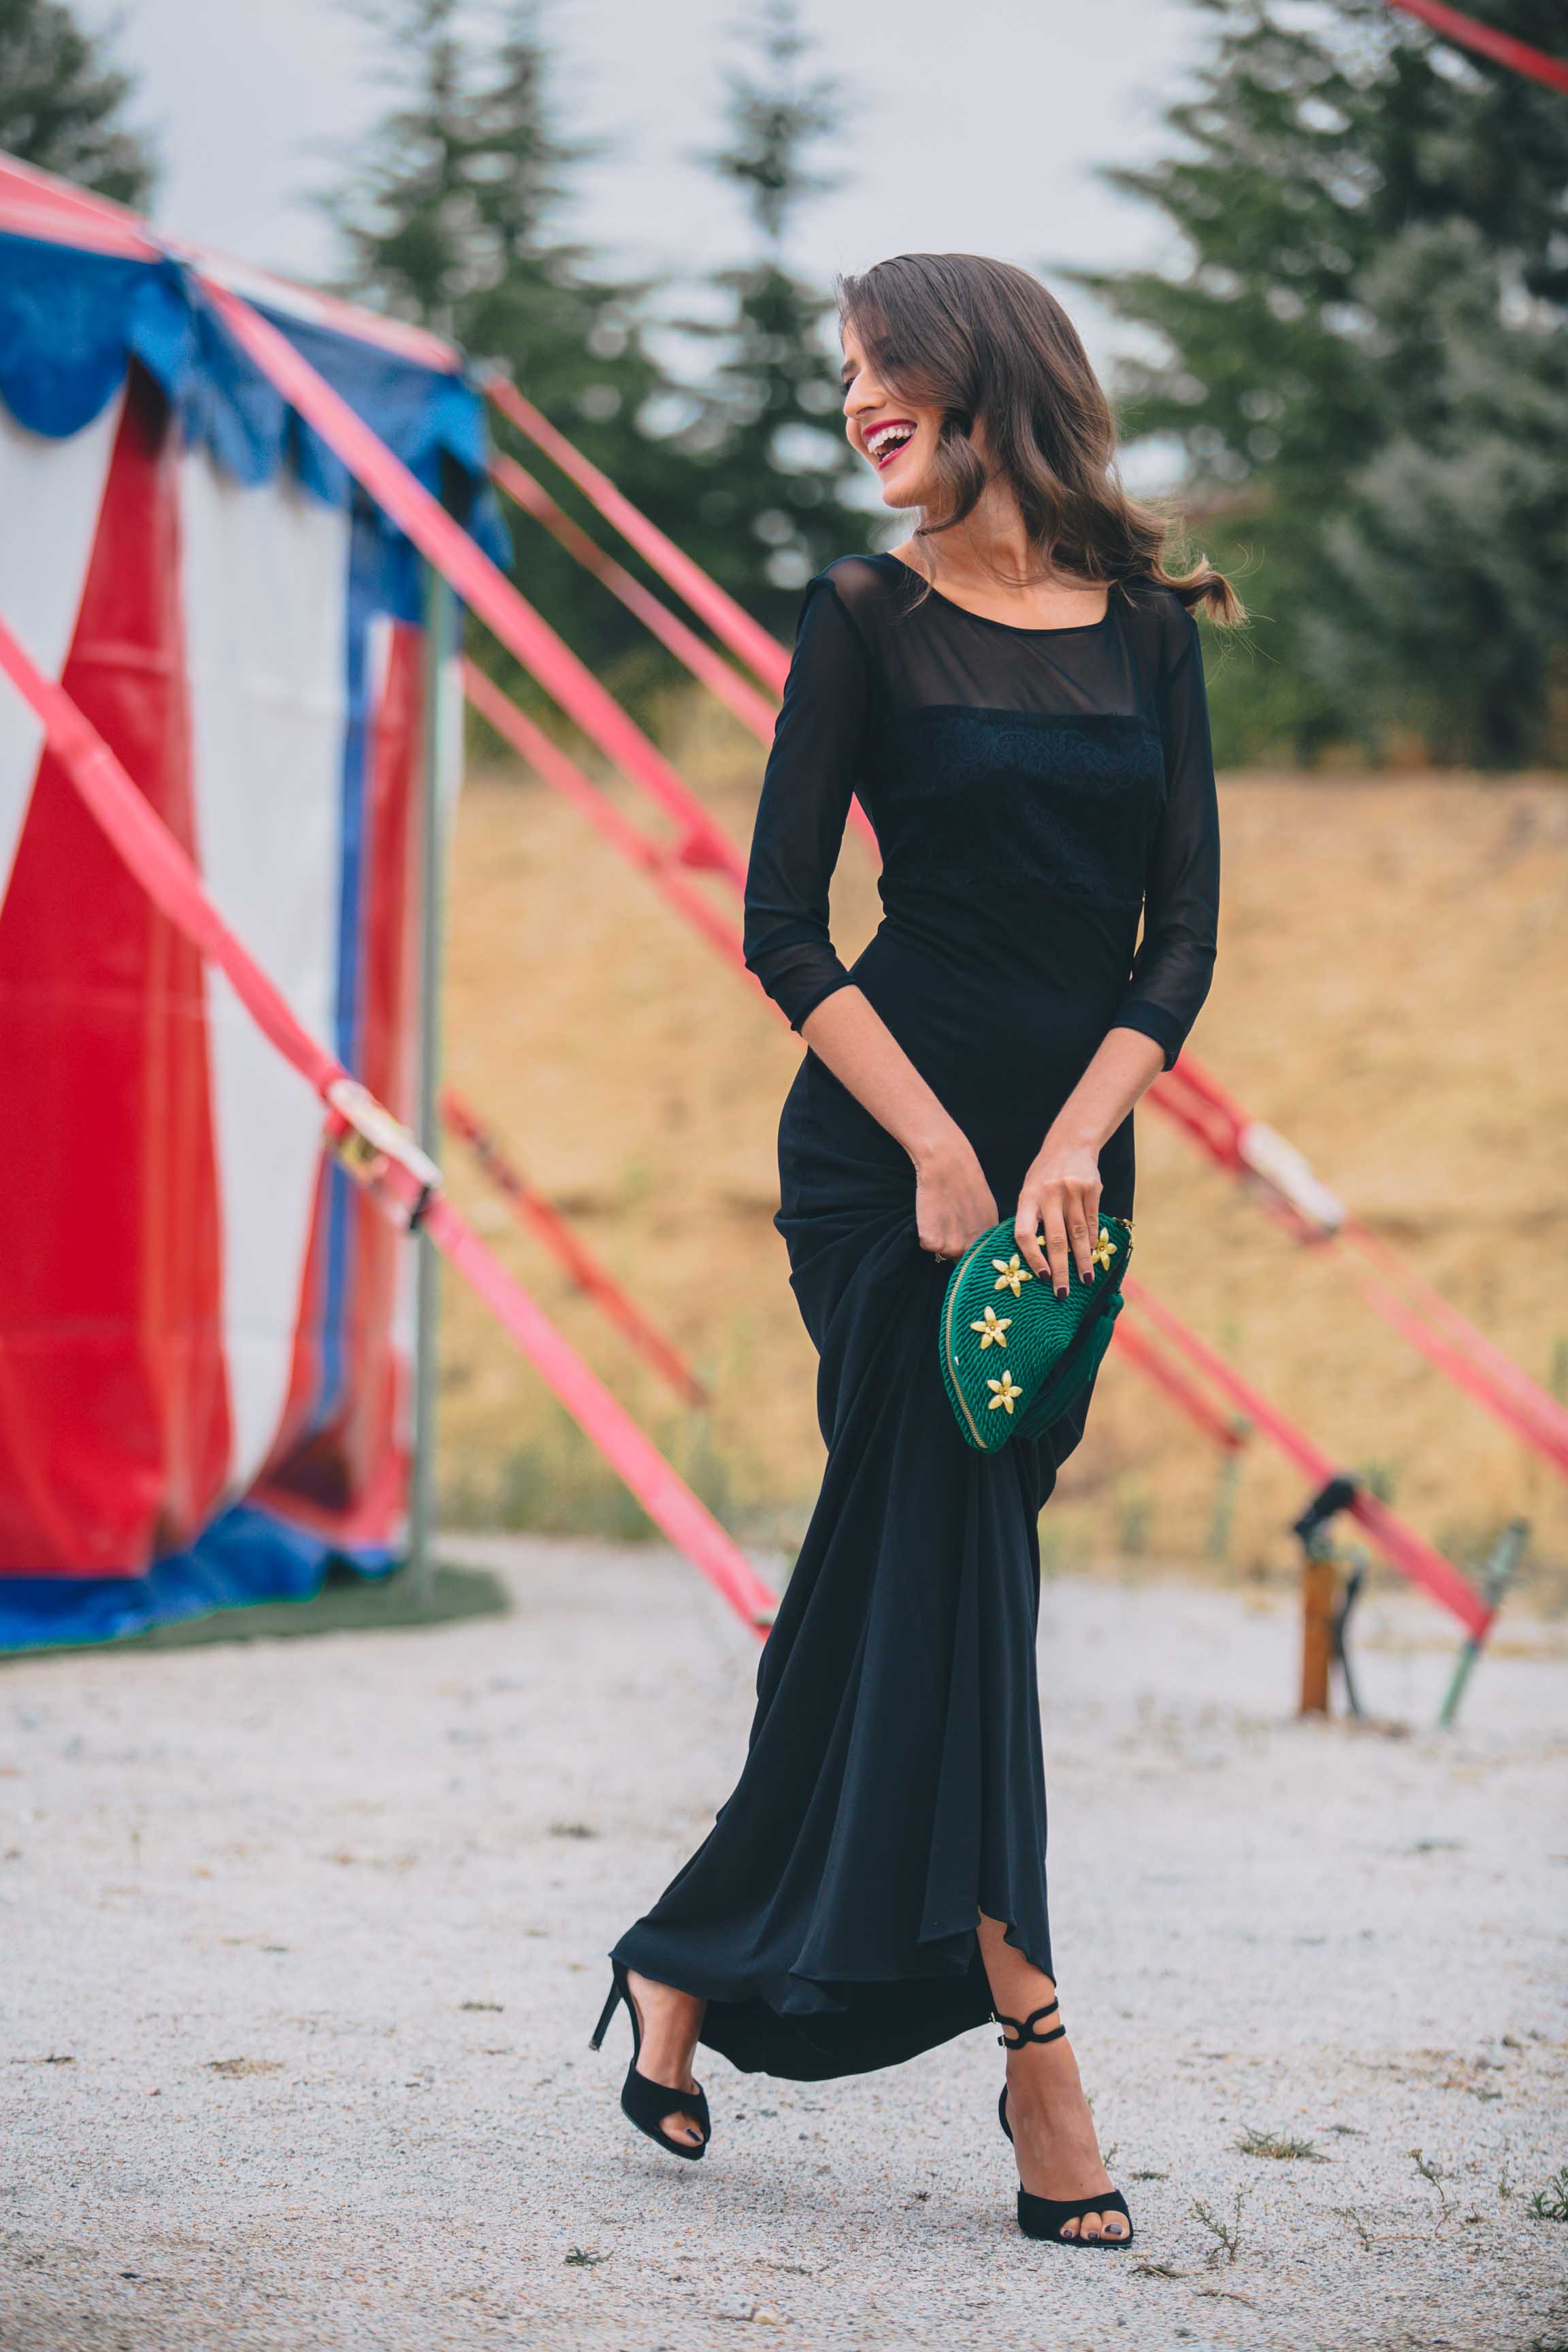 Look invitada boda noche vestido negro largo complementos verdes blogger